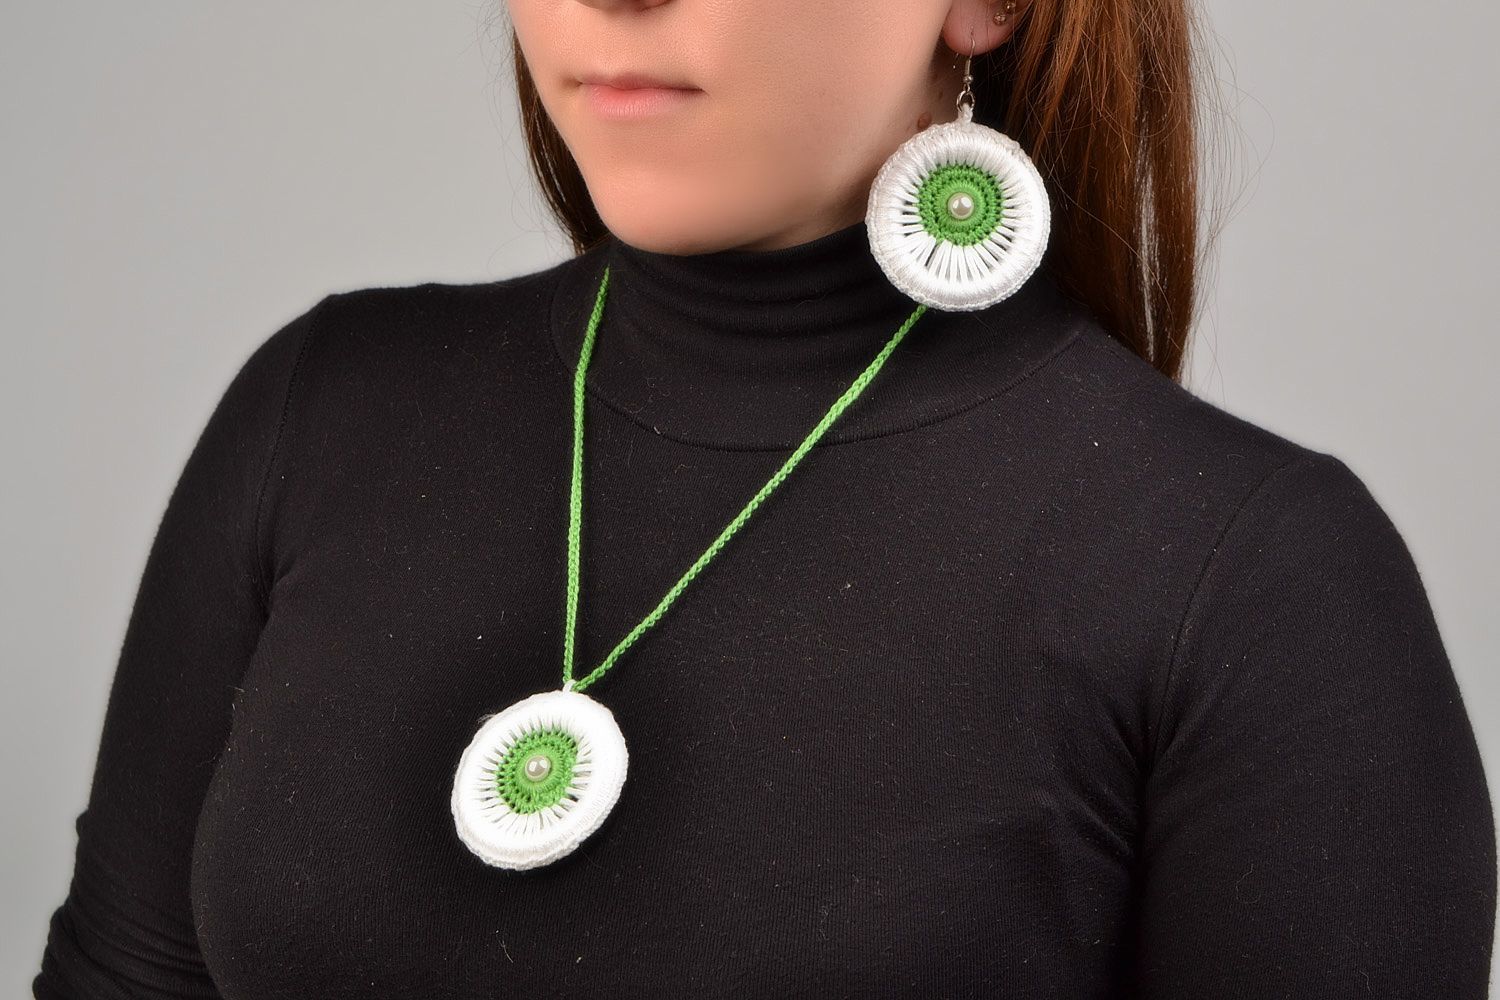 Textil Schmuckset Lange Ohrringe und 
Anhänger aus Fäden geflochten in Weiß und Grün handmade foto 1